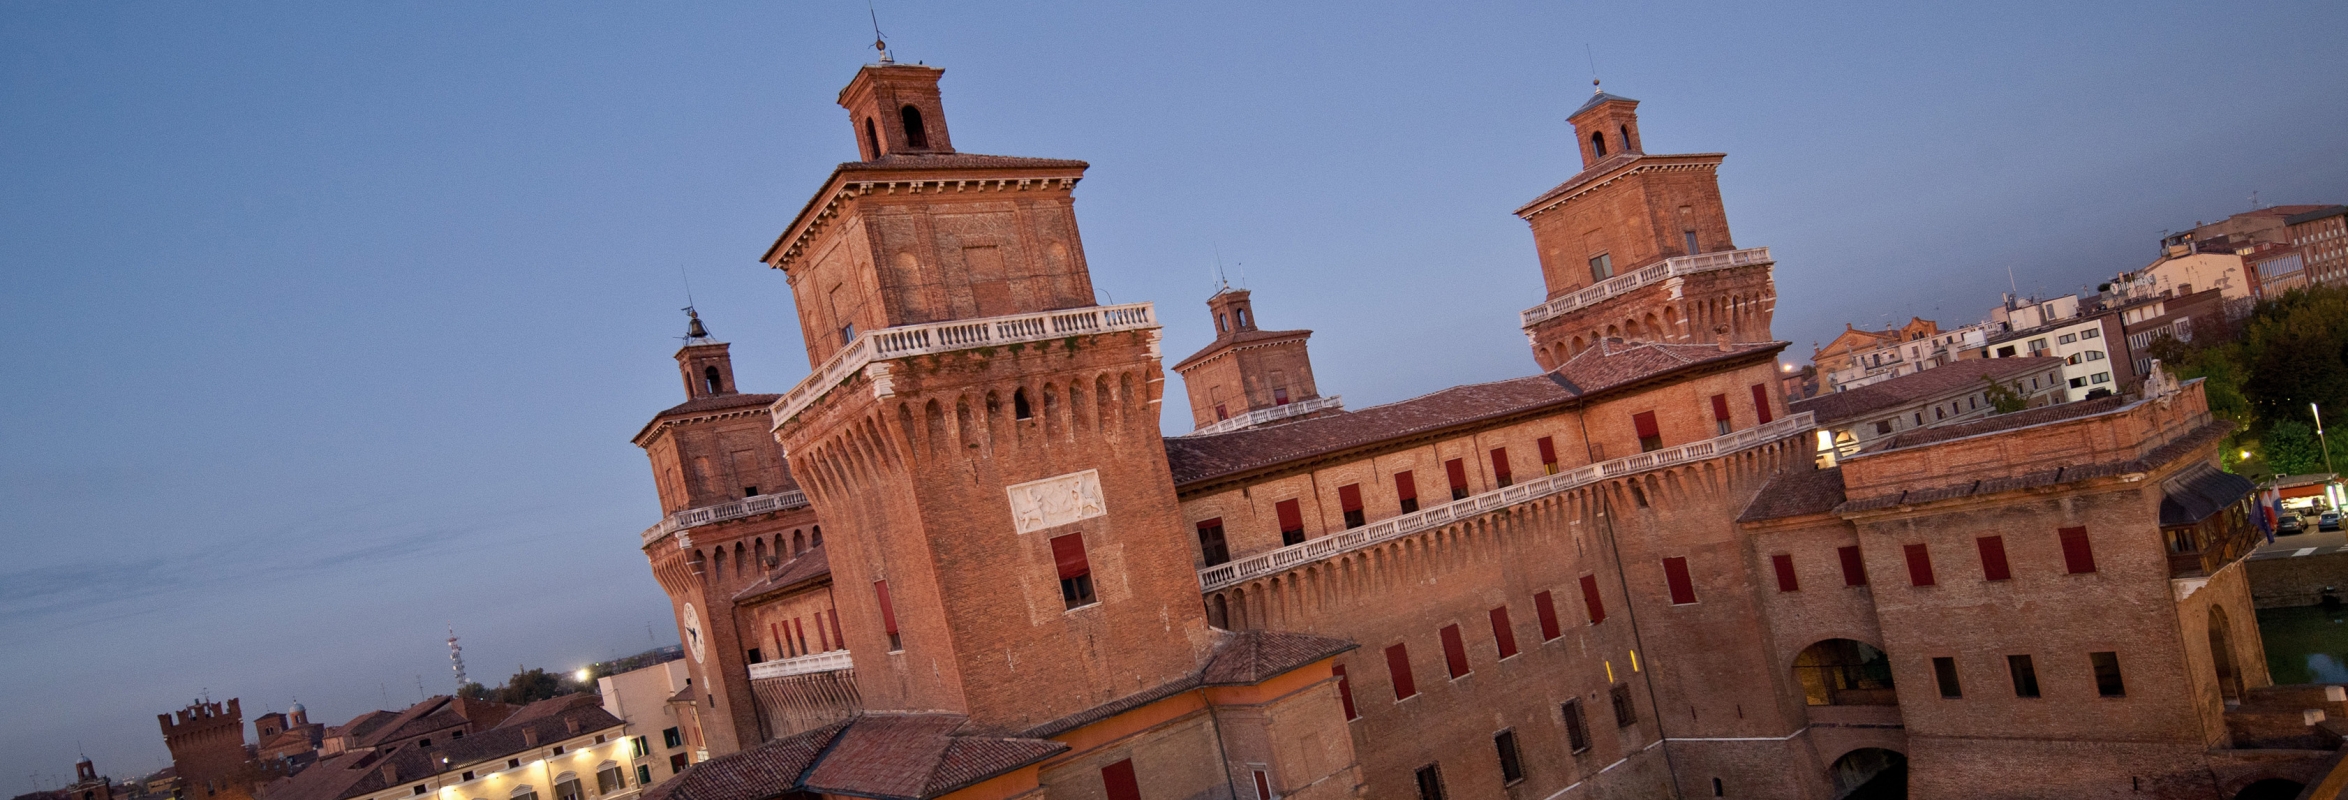 CastellO estense - Torre dei Leoni - ignoto